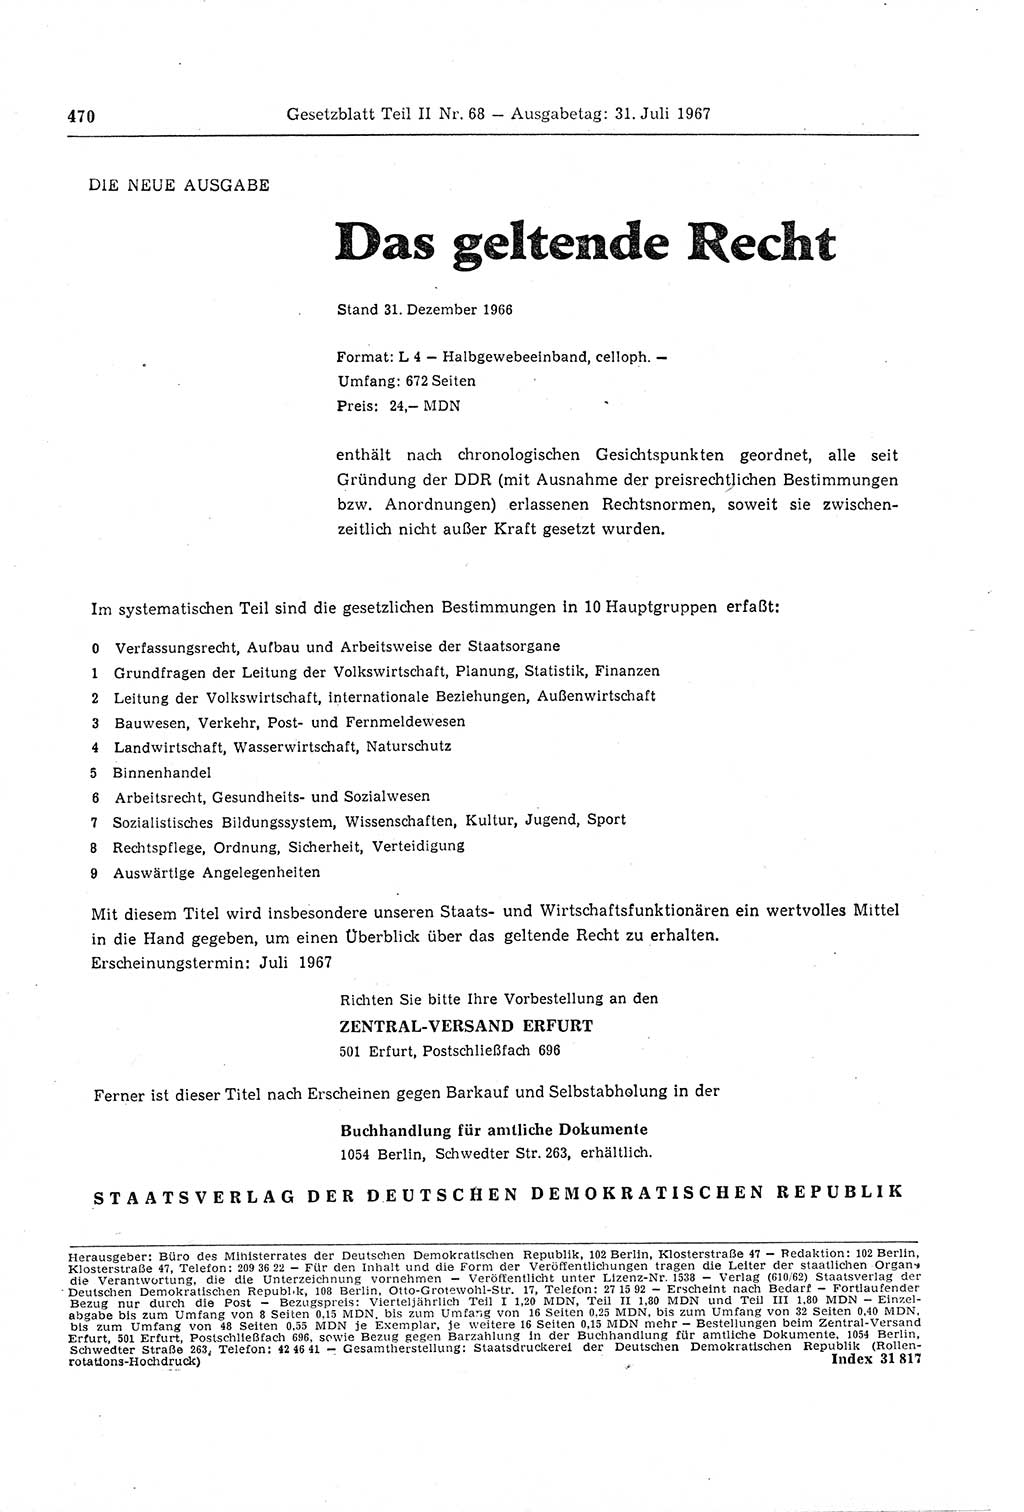 Gesetzblatt (GBl.) der Deutschen Demokratischen Republik (DDR) Teil ⅠⅠ 1967, Seite 470 (GBl. DDR ⅠⅠ 1967, S. 470)